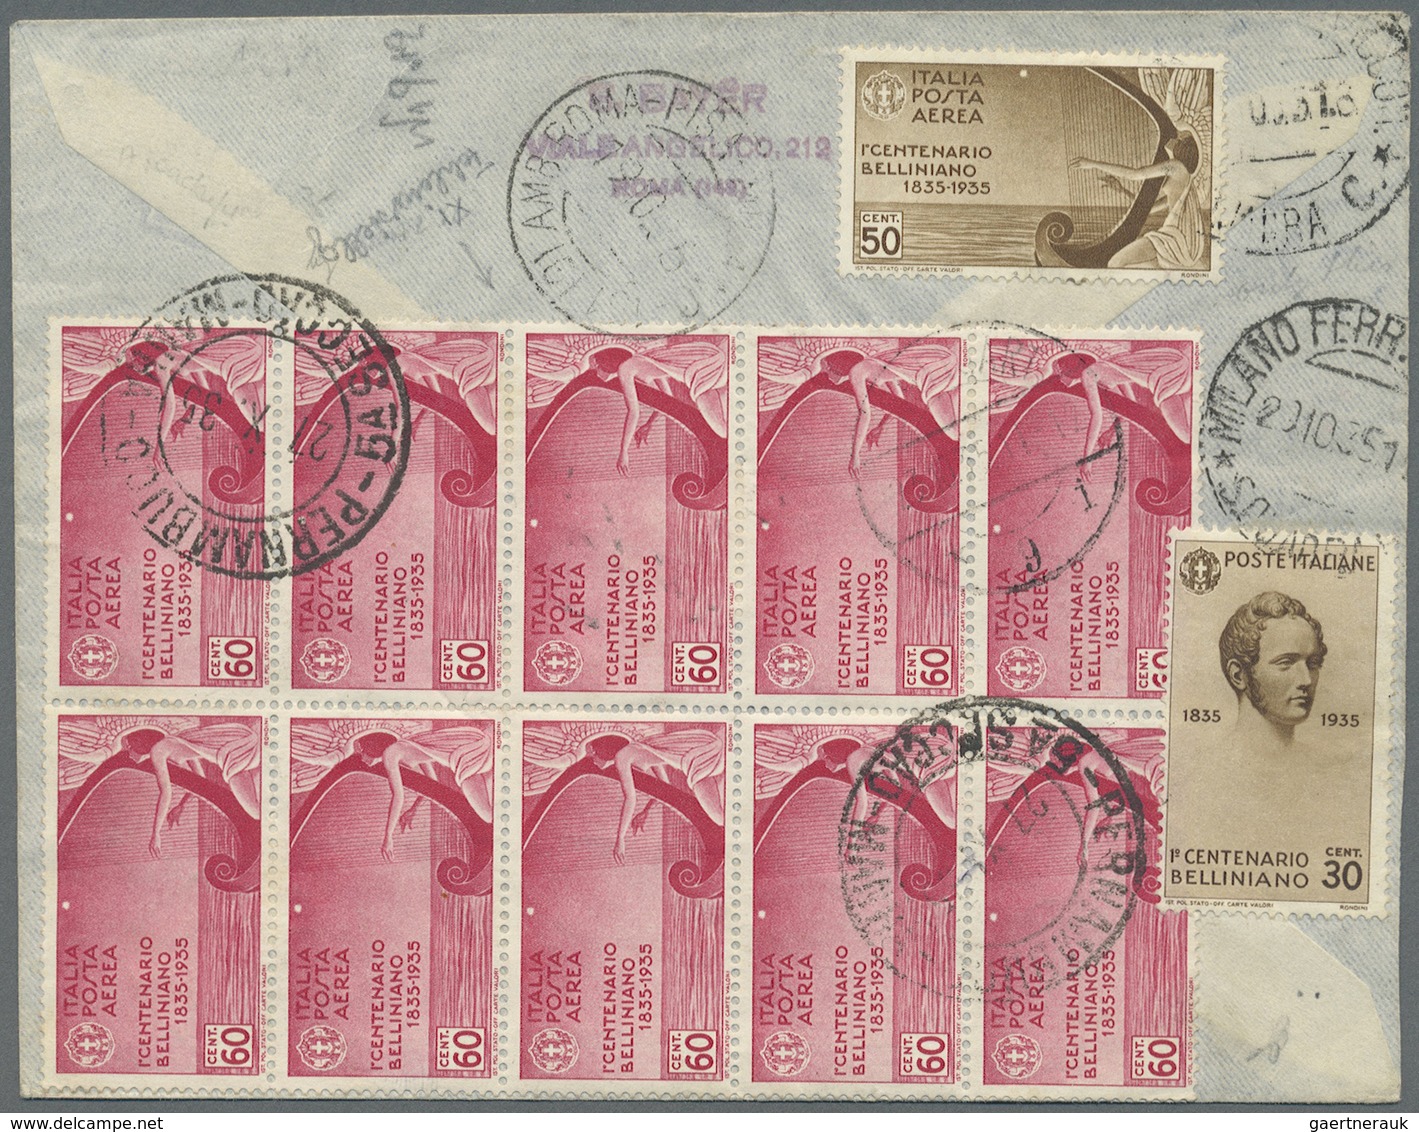 Br Zeppelinpost Europa: 1935, VATIKAN: Reco-Drucksachenbrief Mit Juristenkongress-Marken (s. Mi-Nrn.), - Sonstige - Europa